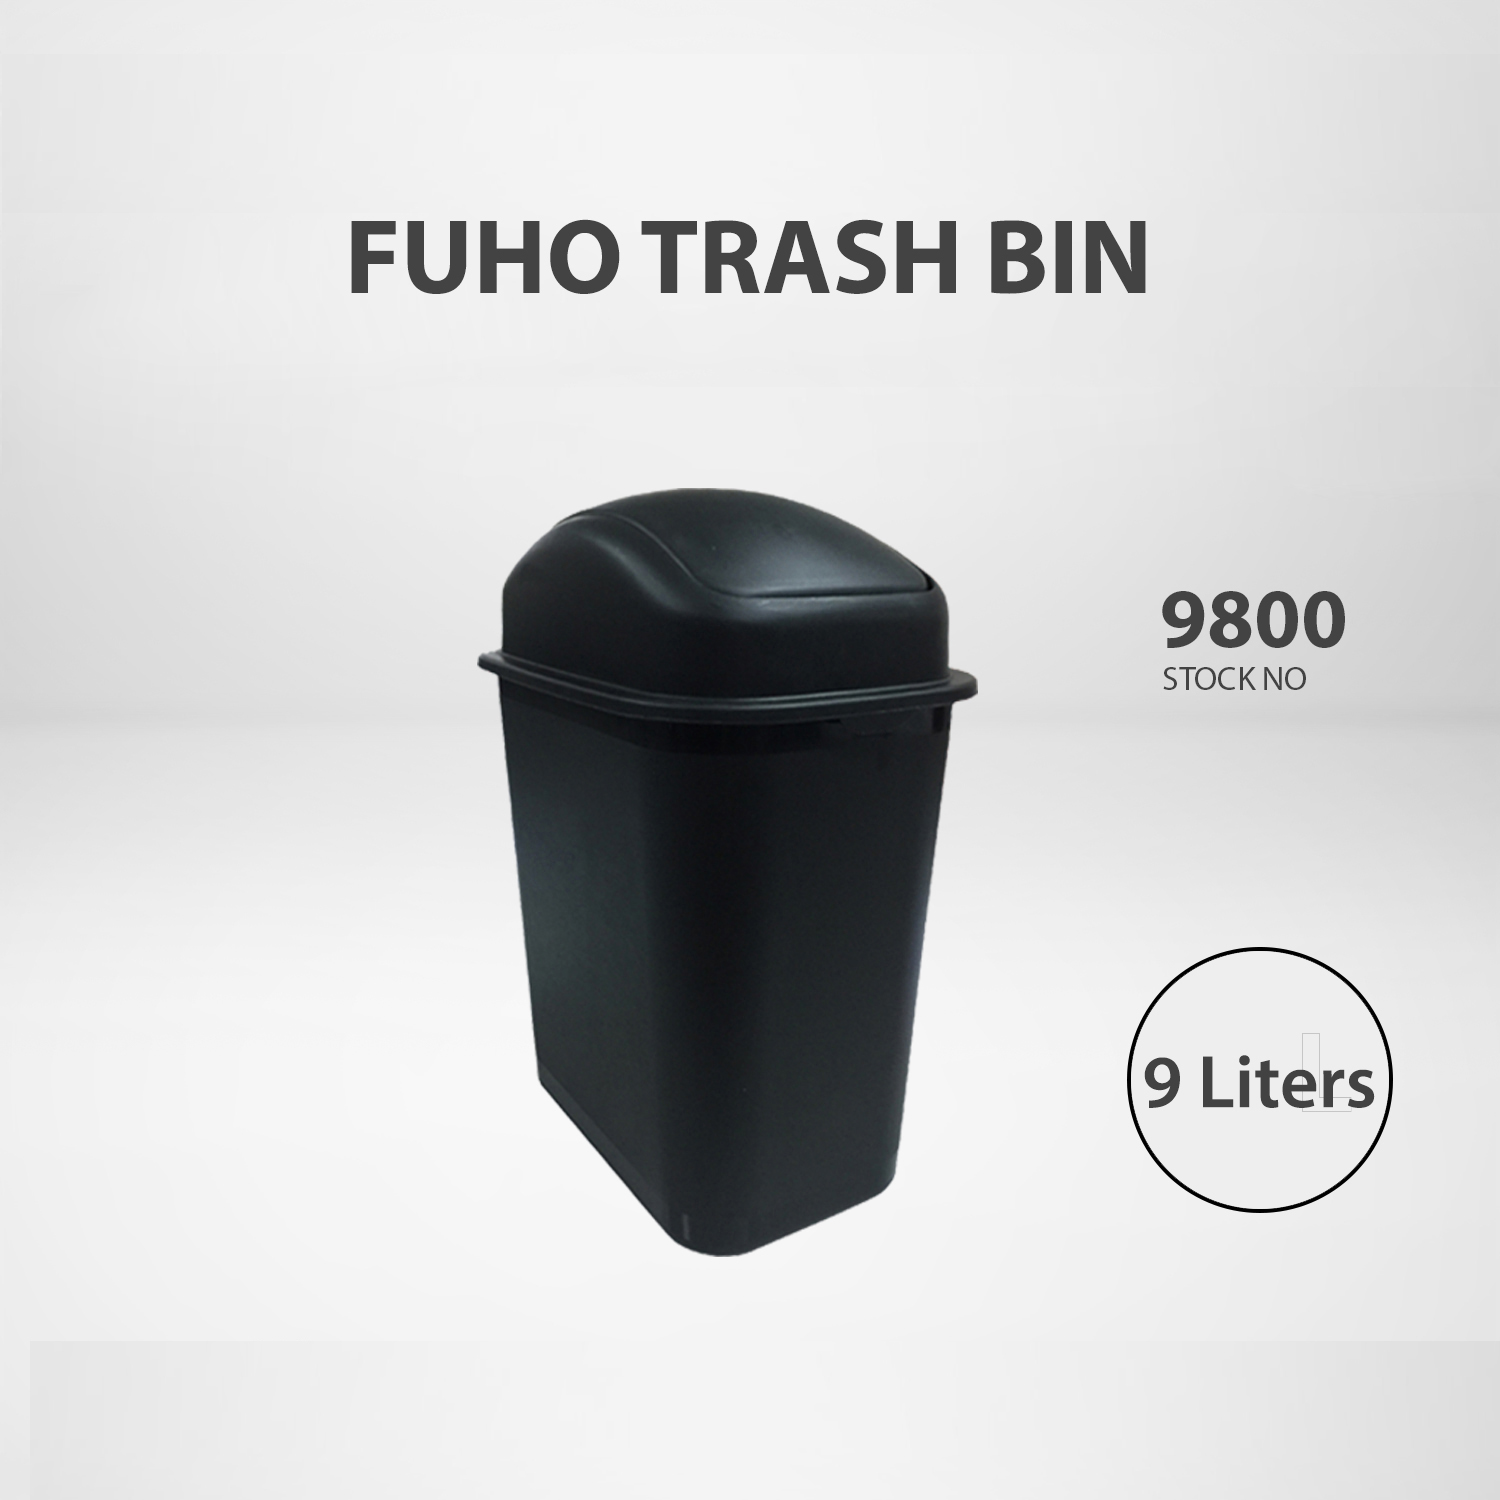 buy garbage bin online